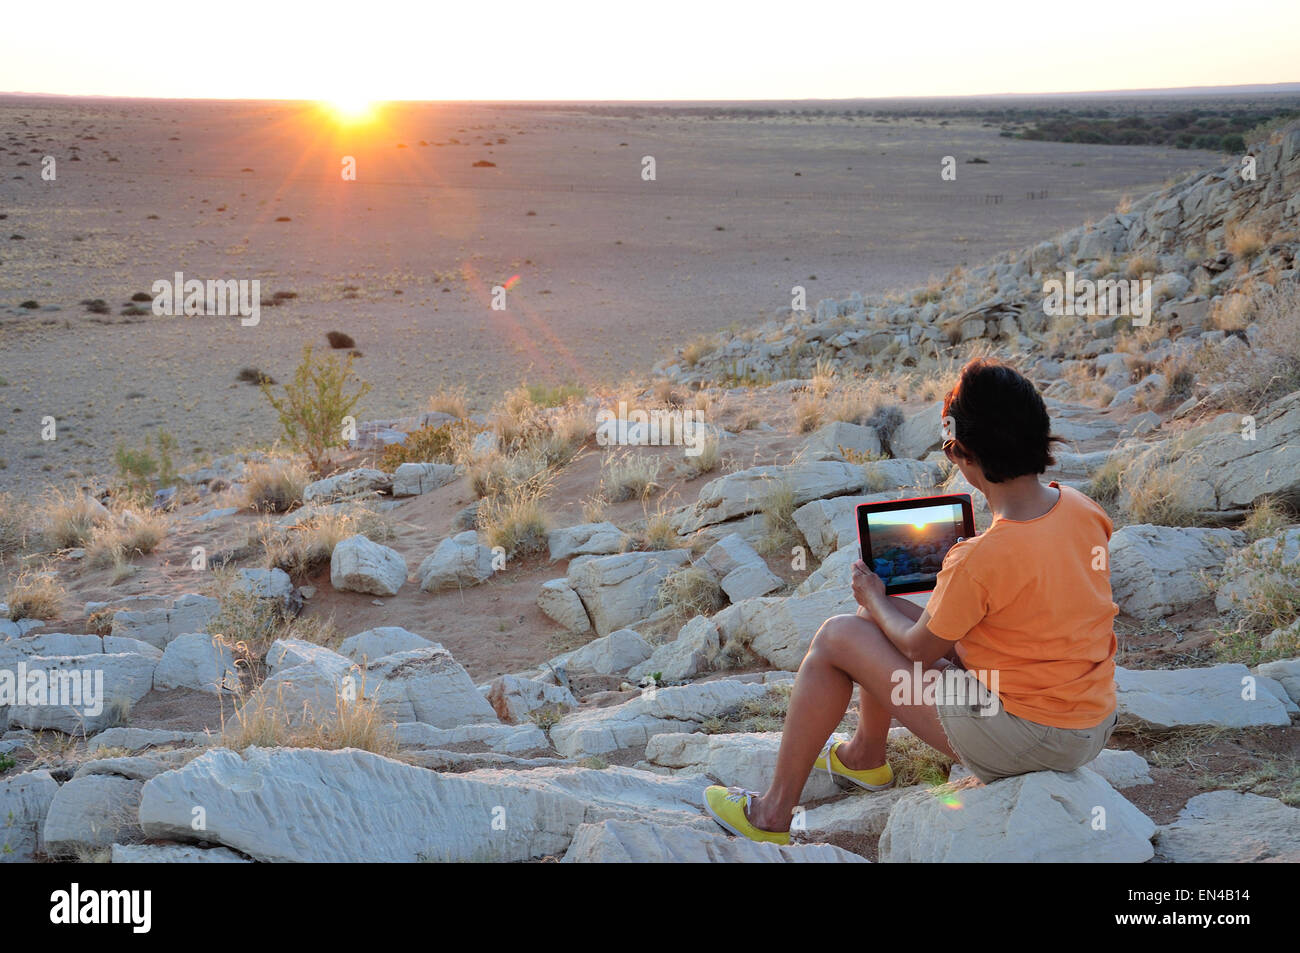 Mujer fotografiando atardecer con ipad en el desierto de Namib, Solitario, desierto de Namib, República de Namibia Foto de stock